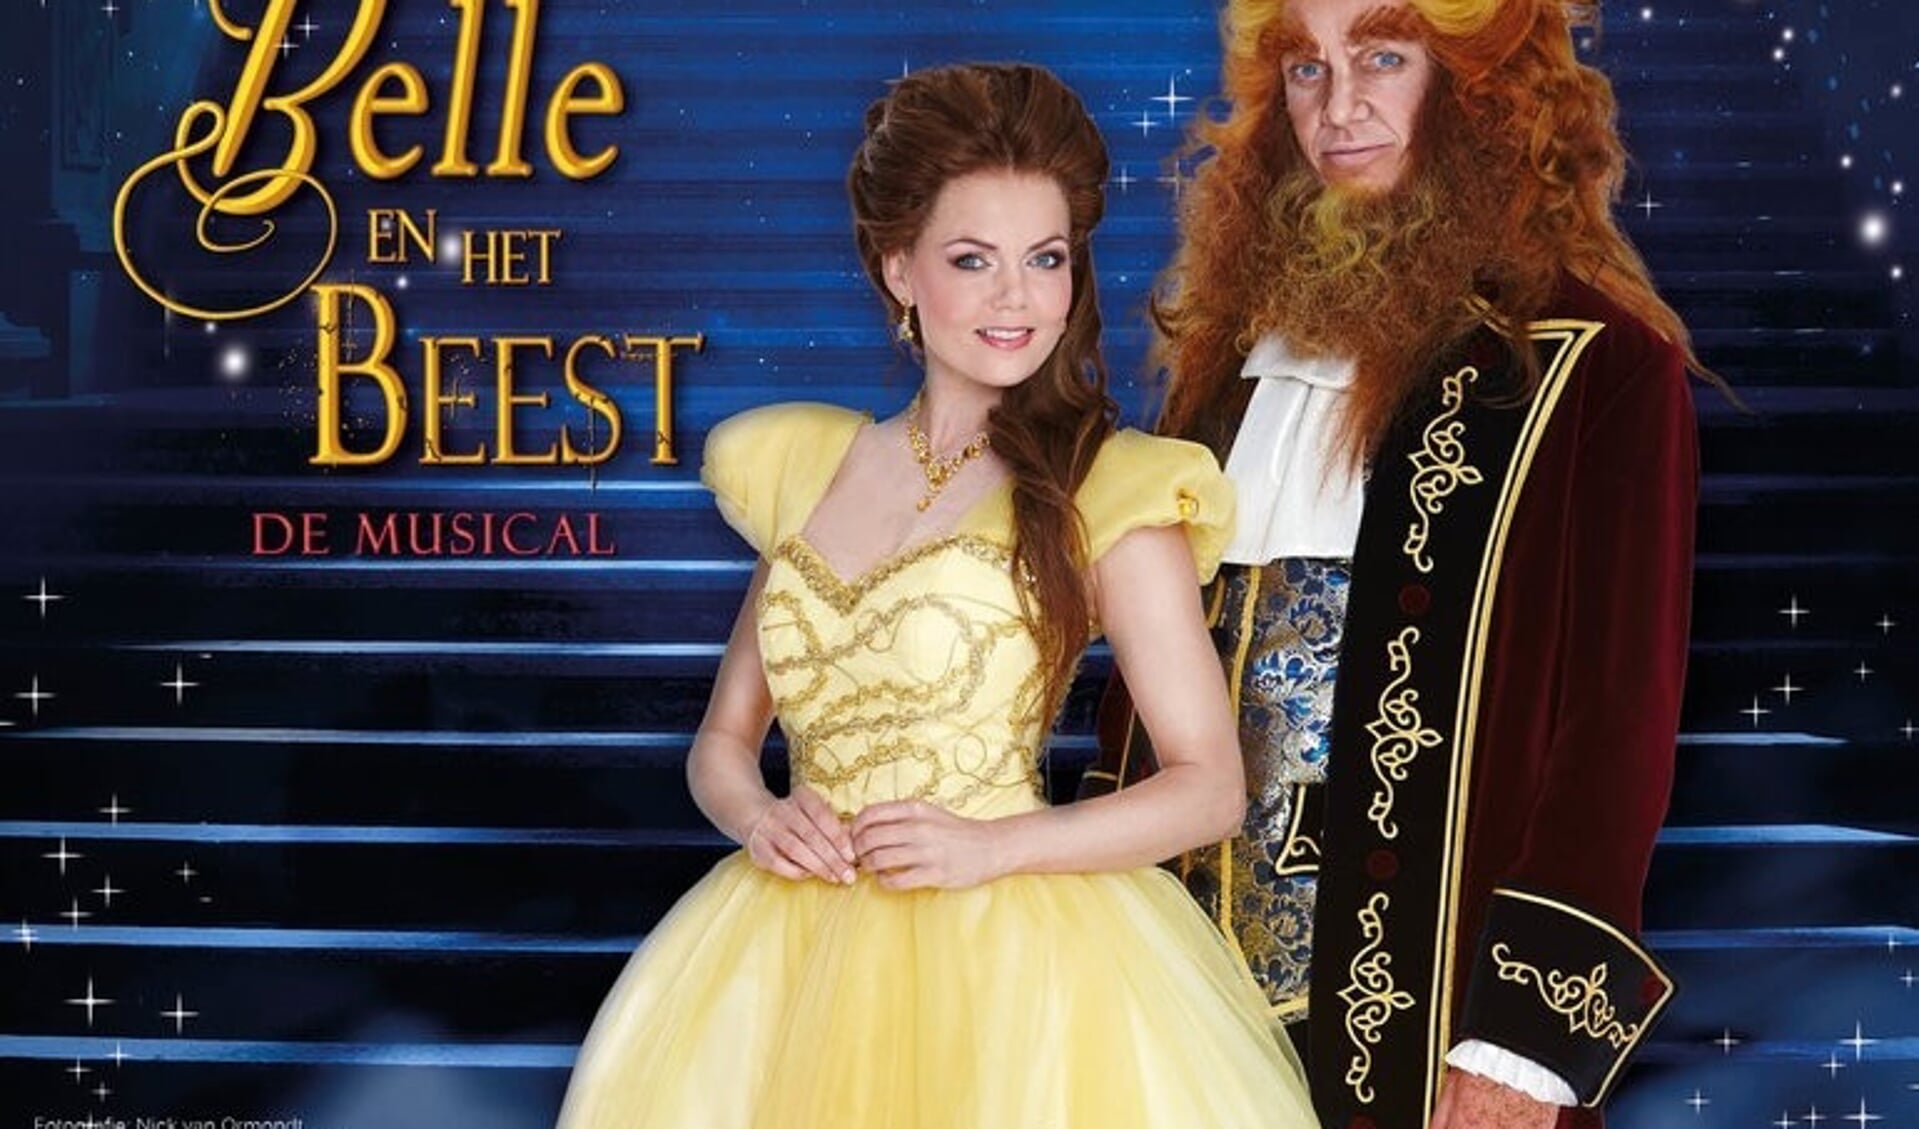 Door wie wordt Belle gespeeld? Noem twee namen!